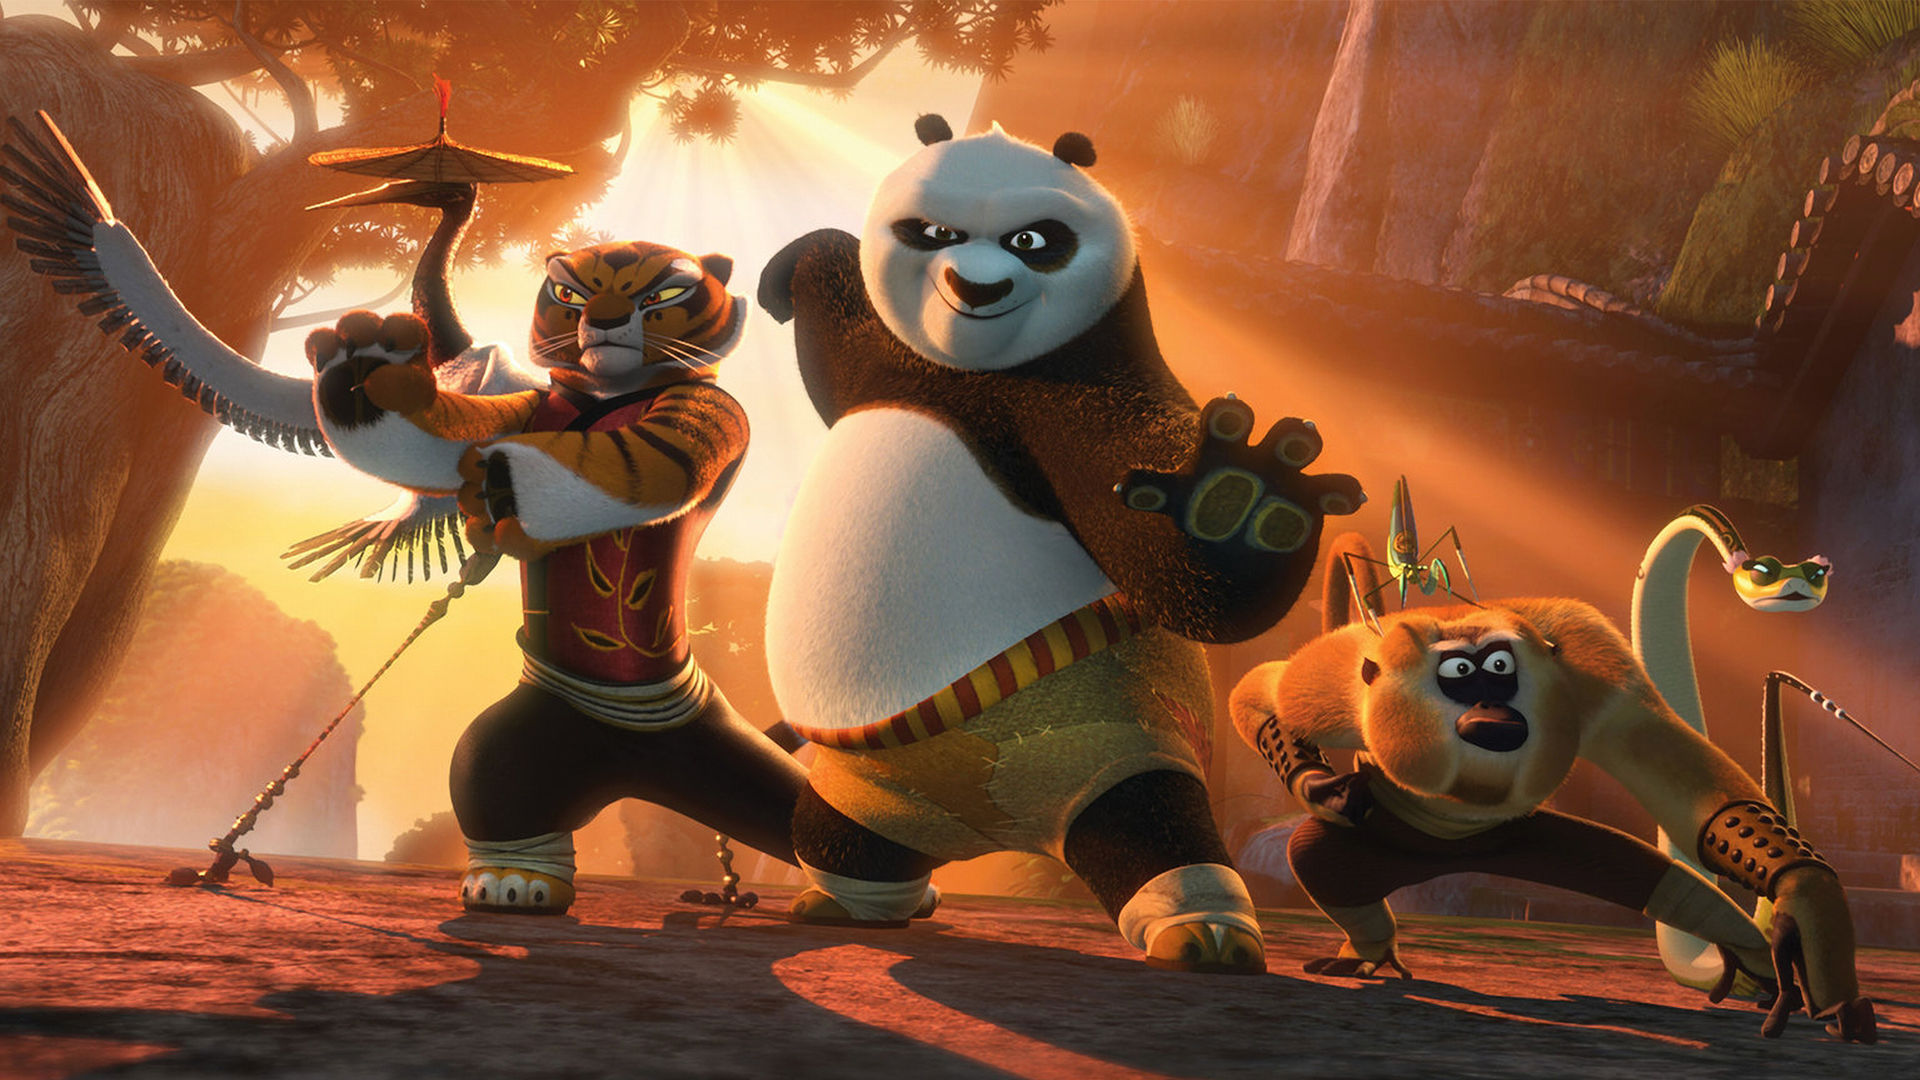 Cinema: Crítica: “Kung Fu Panda 3” diverte, mas tem trama previsível 